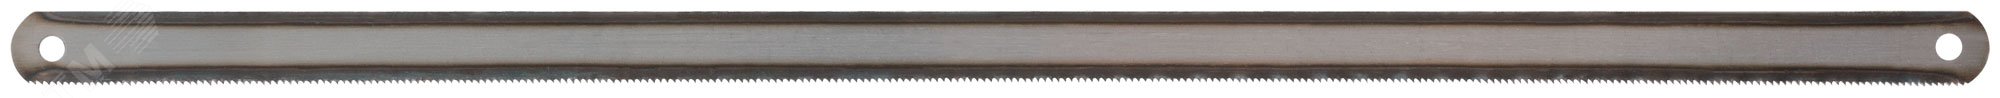 Полотна ножовочные по металлу, каленый зуб, узкие односторонние 300х12 мм, 72 шт 40140 FIT - превью